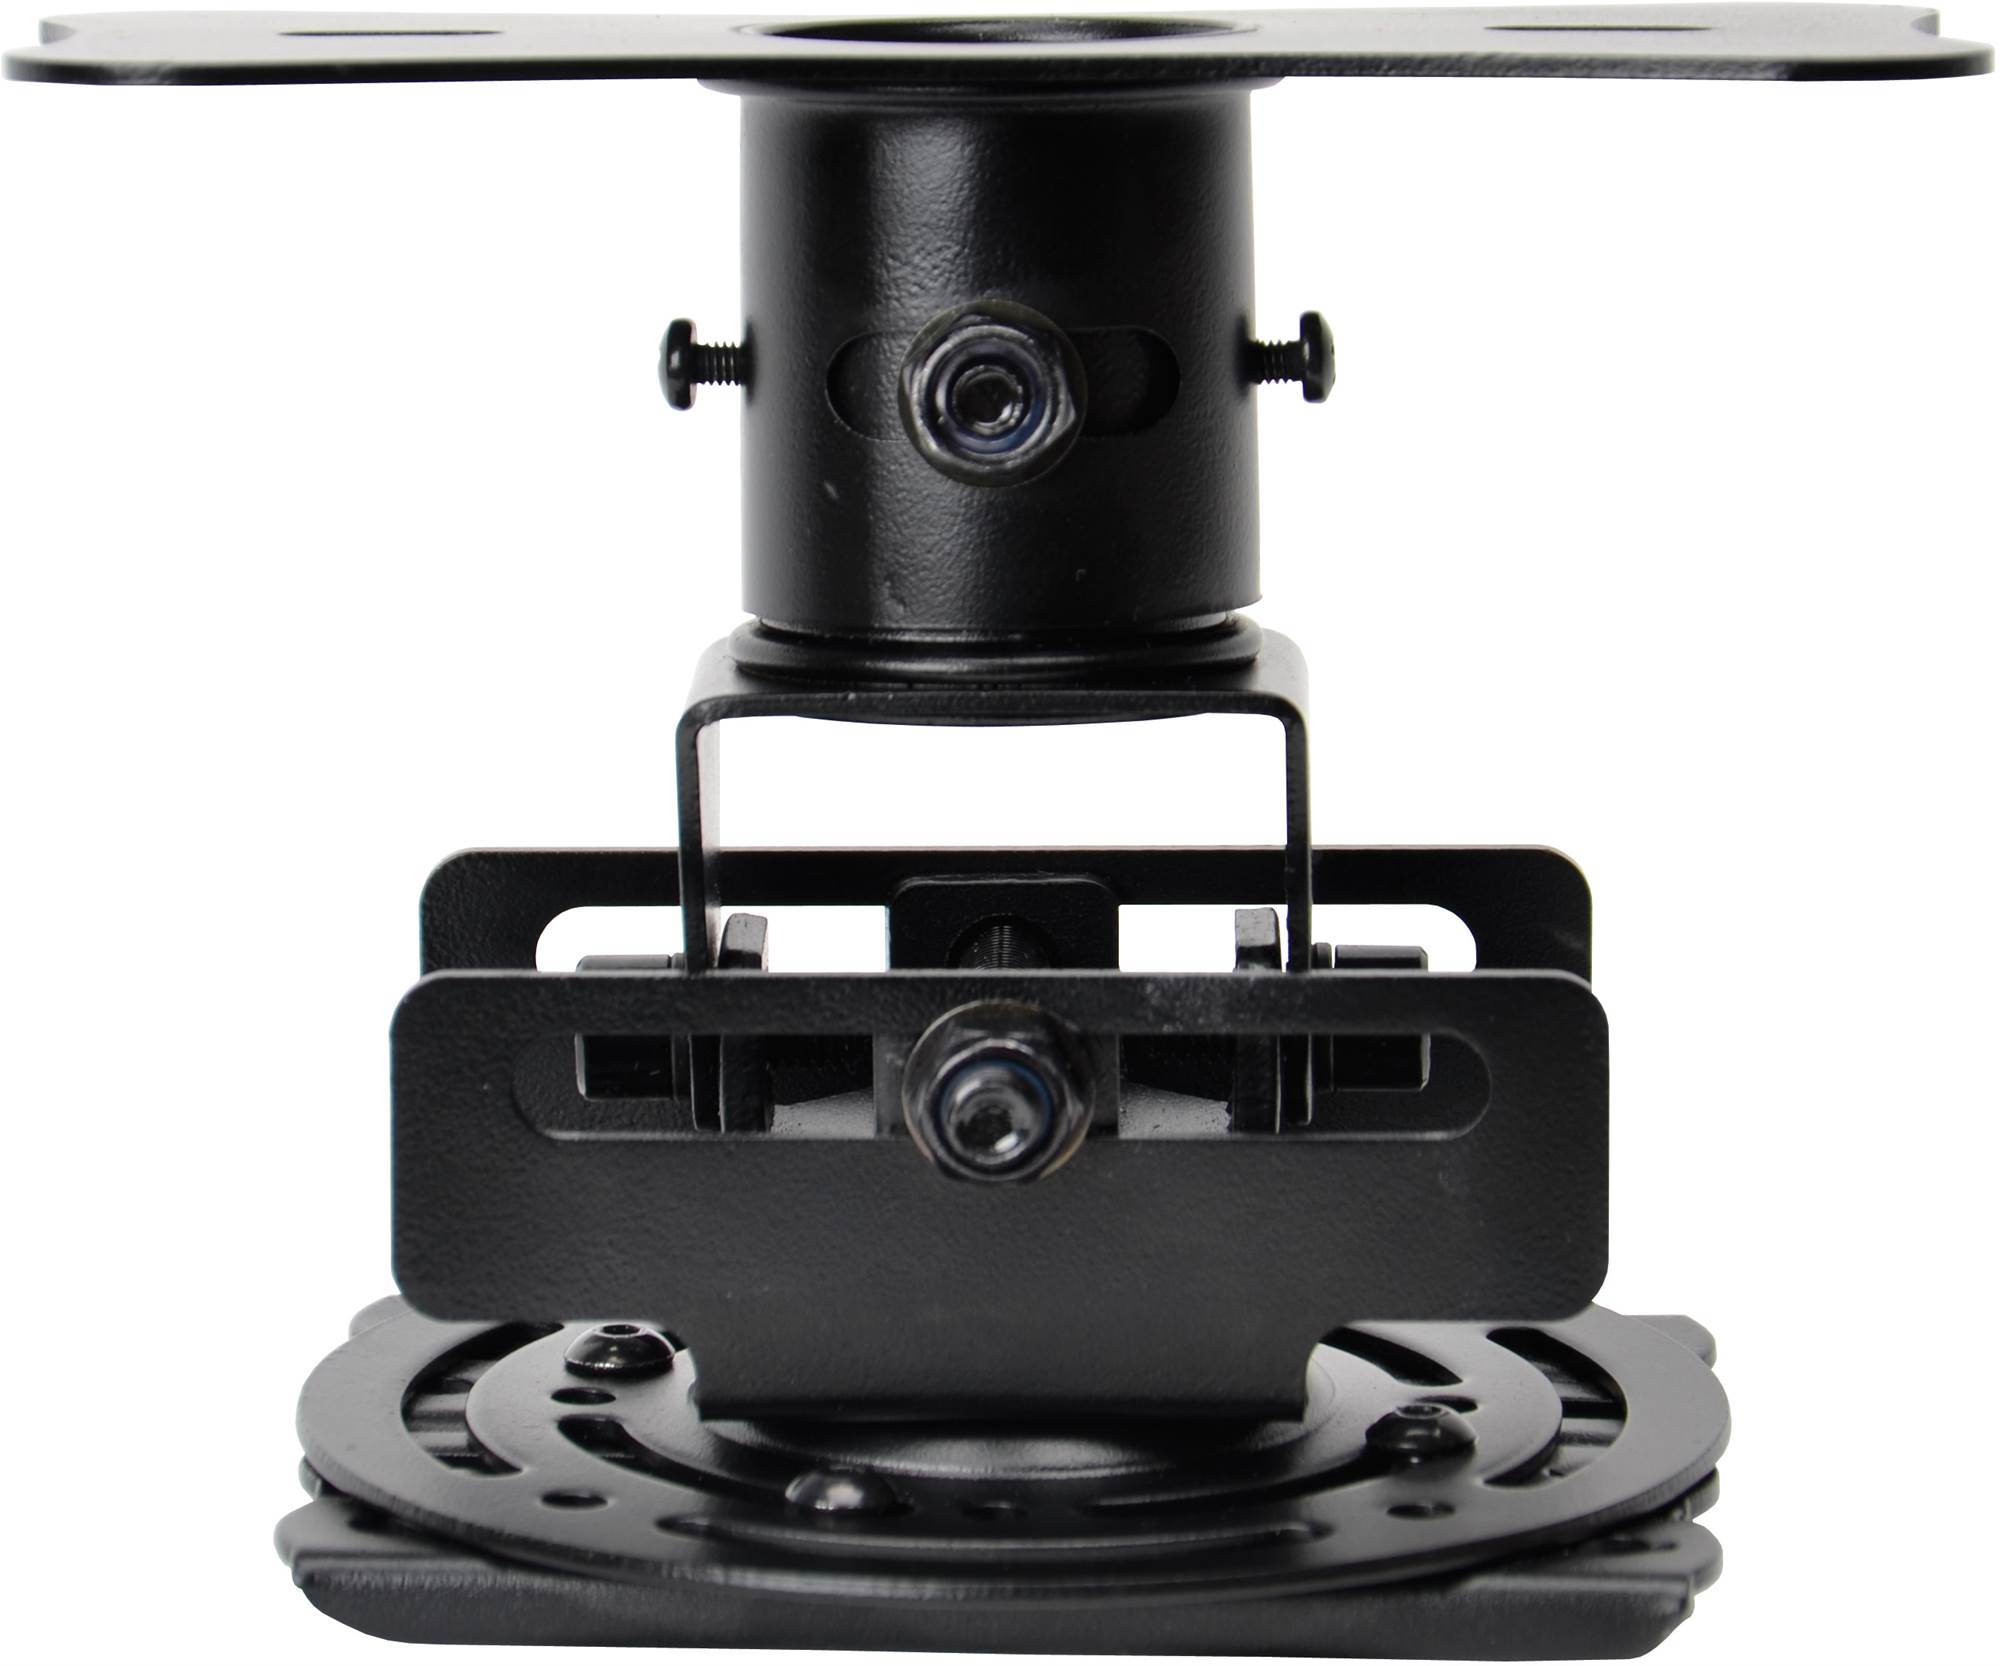 Mennyezeti tartó Optoma univerzális mennyezeti projektor tartó - fekete (70 mm)